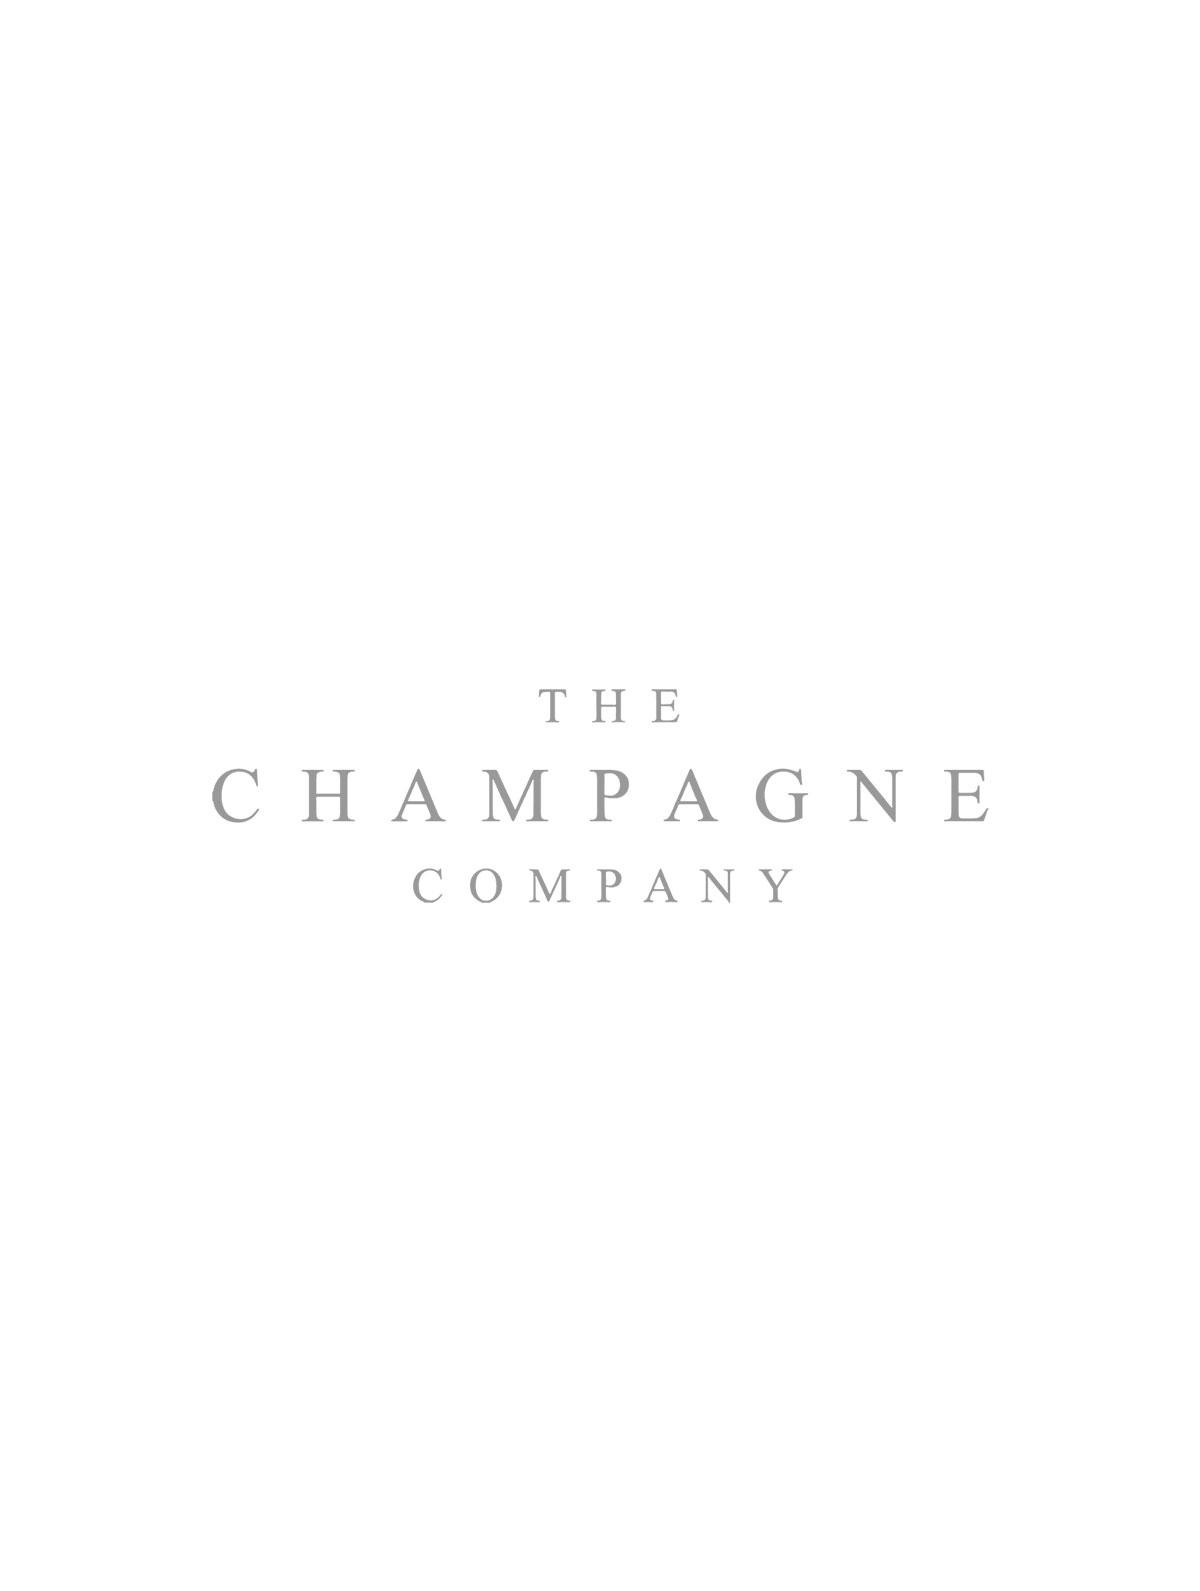 Laurent-Perrier Magnum Cuvée Rosé Champagne Brut NV 150cl Gift Box